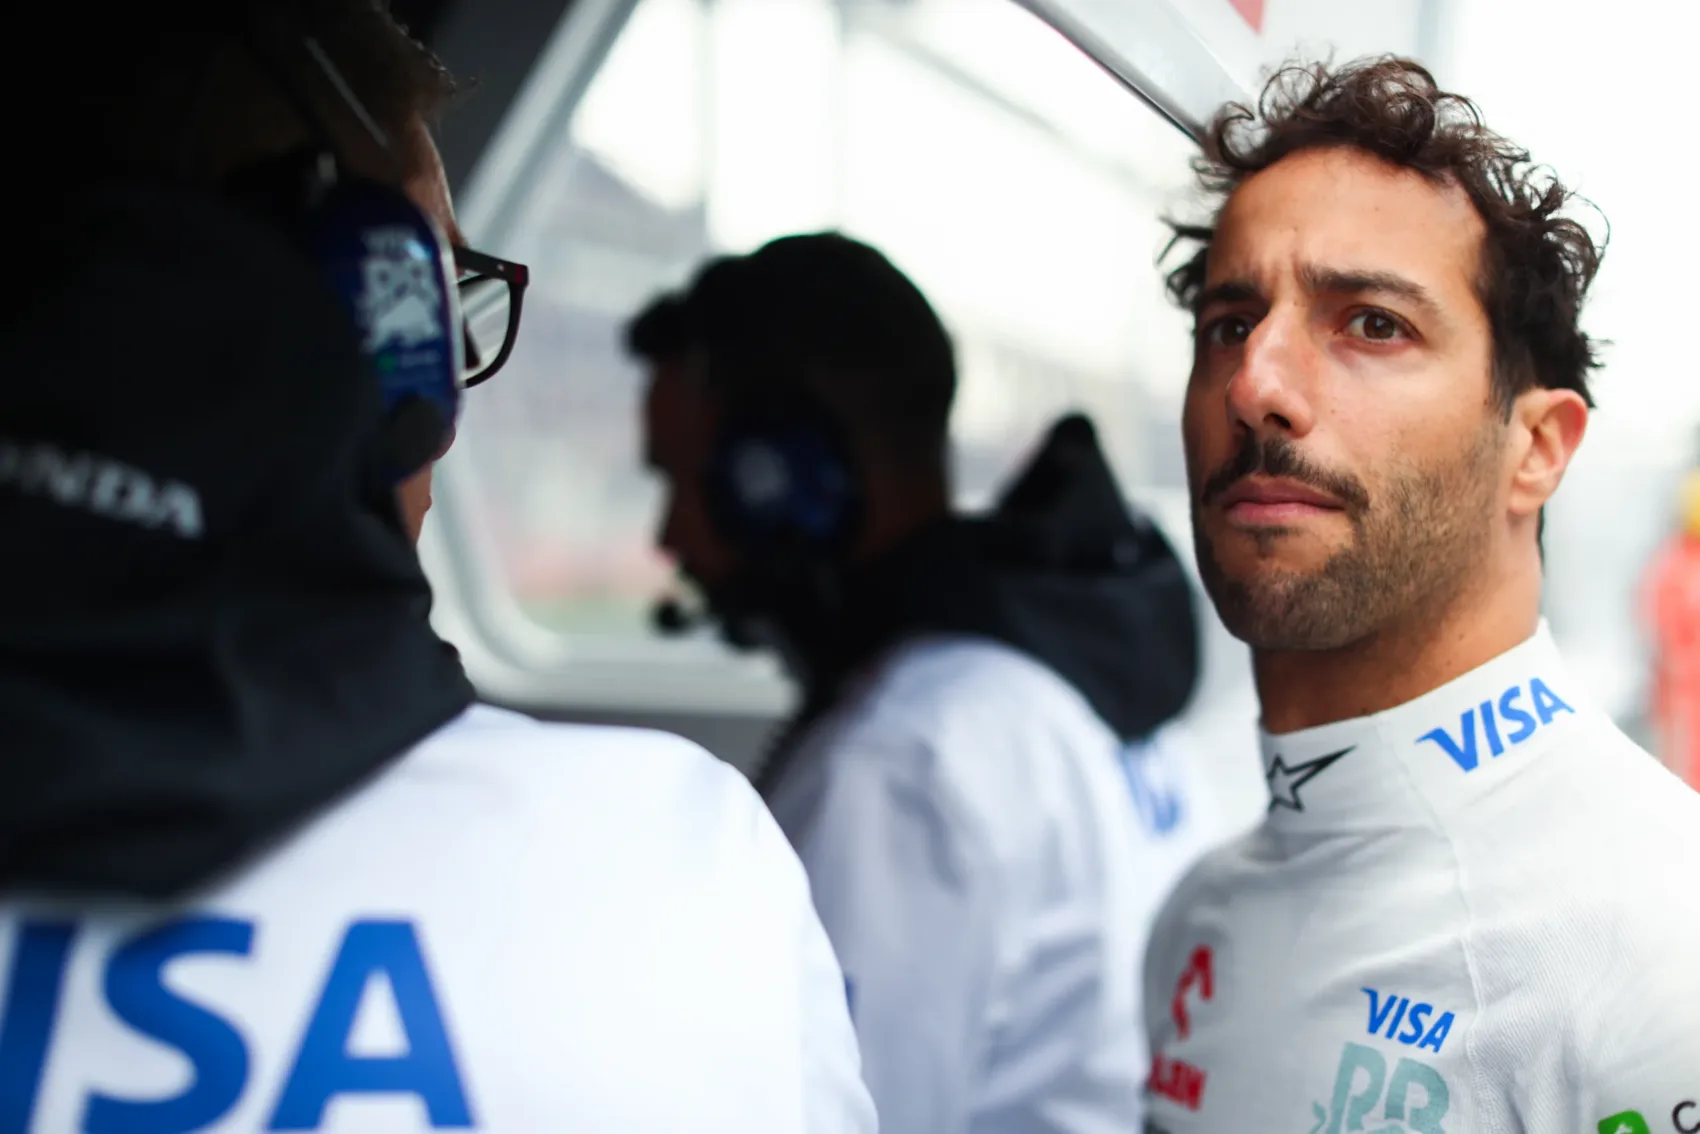 Az F1-s hős Daniel Ricciardo őszinte vallomása: ‘Nem érdemlem meg a helyem, ha kiporolják a fenekem’